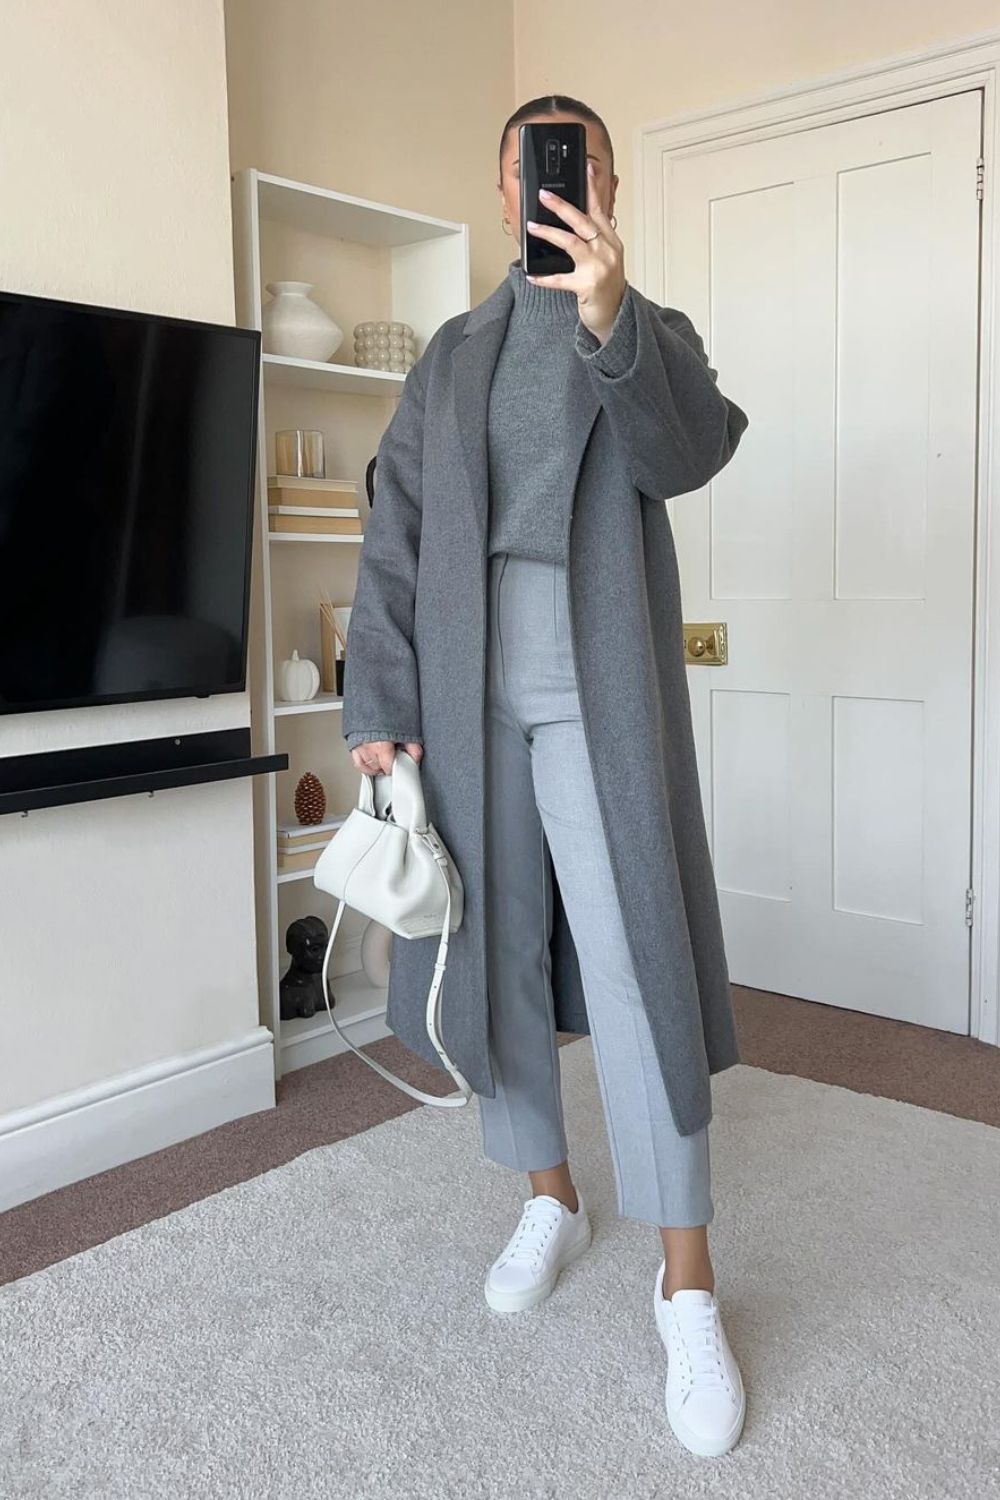 Suéter cinza de gola alta, sobretudo, calça de alfaiataria cinza, tênis e bolsa branca